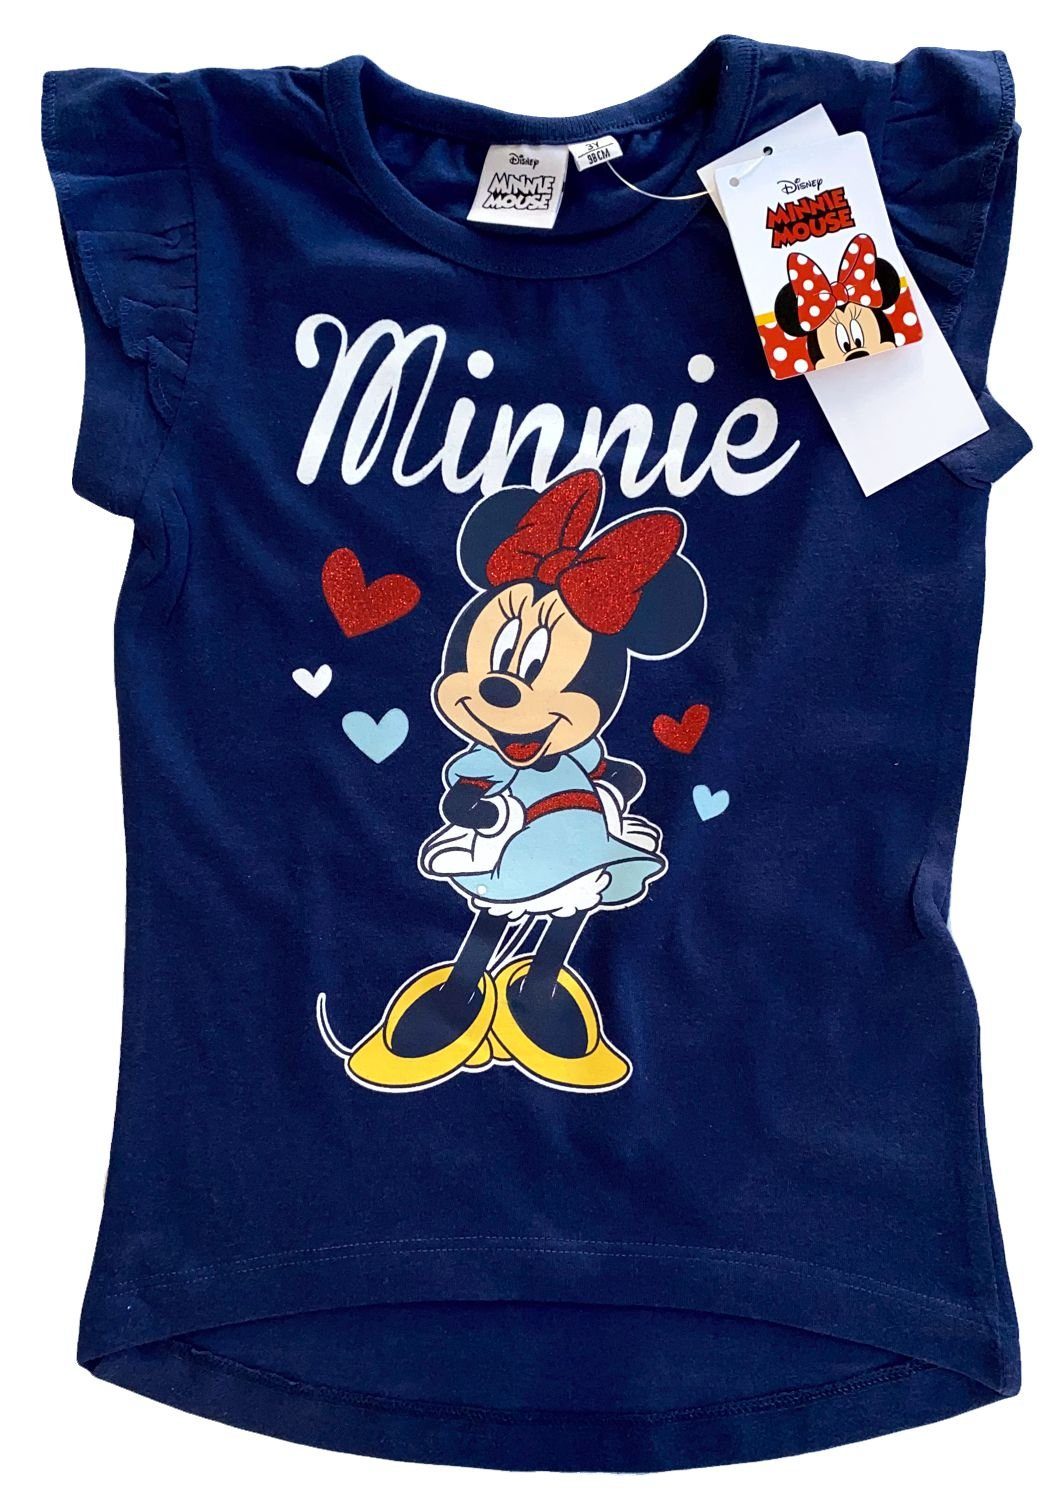 Püttmann Disney Minnie Mouse Mädchen KinderT-Shirt Gr 98-128 Shirt kurzarm neu